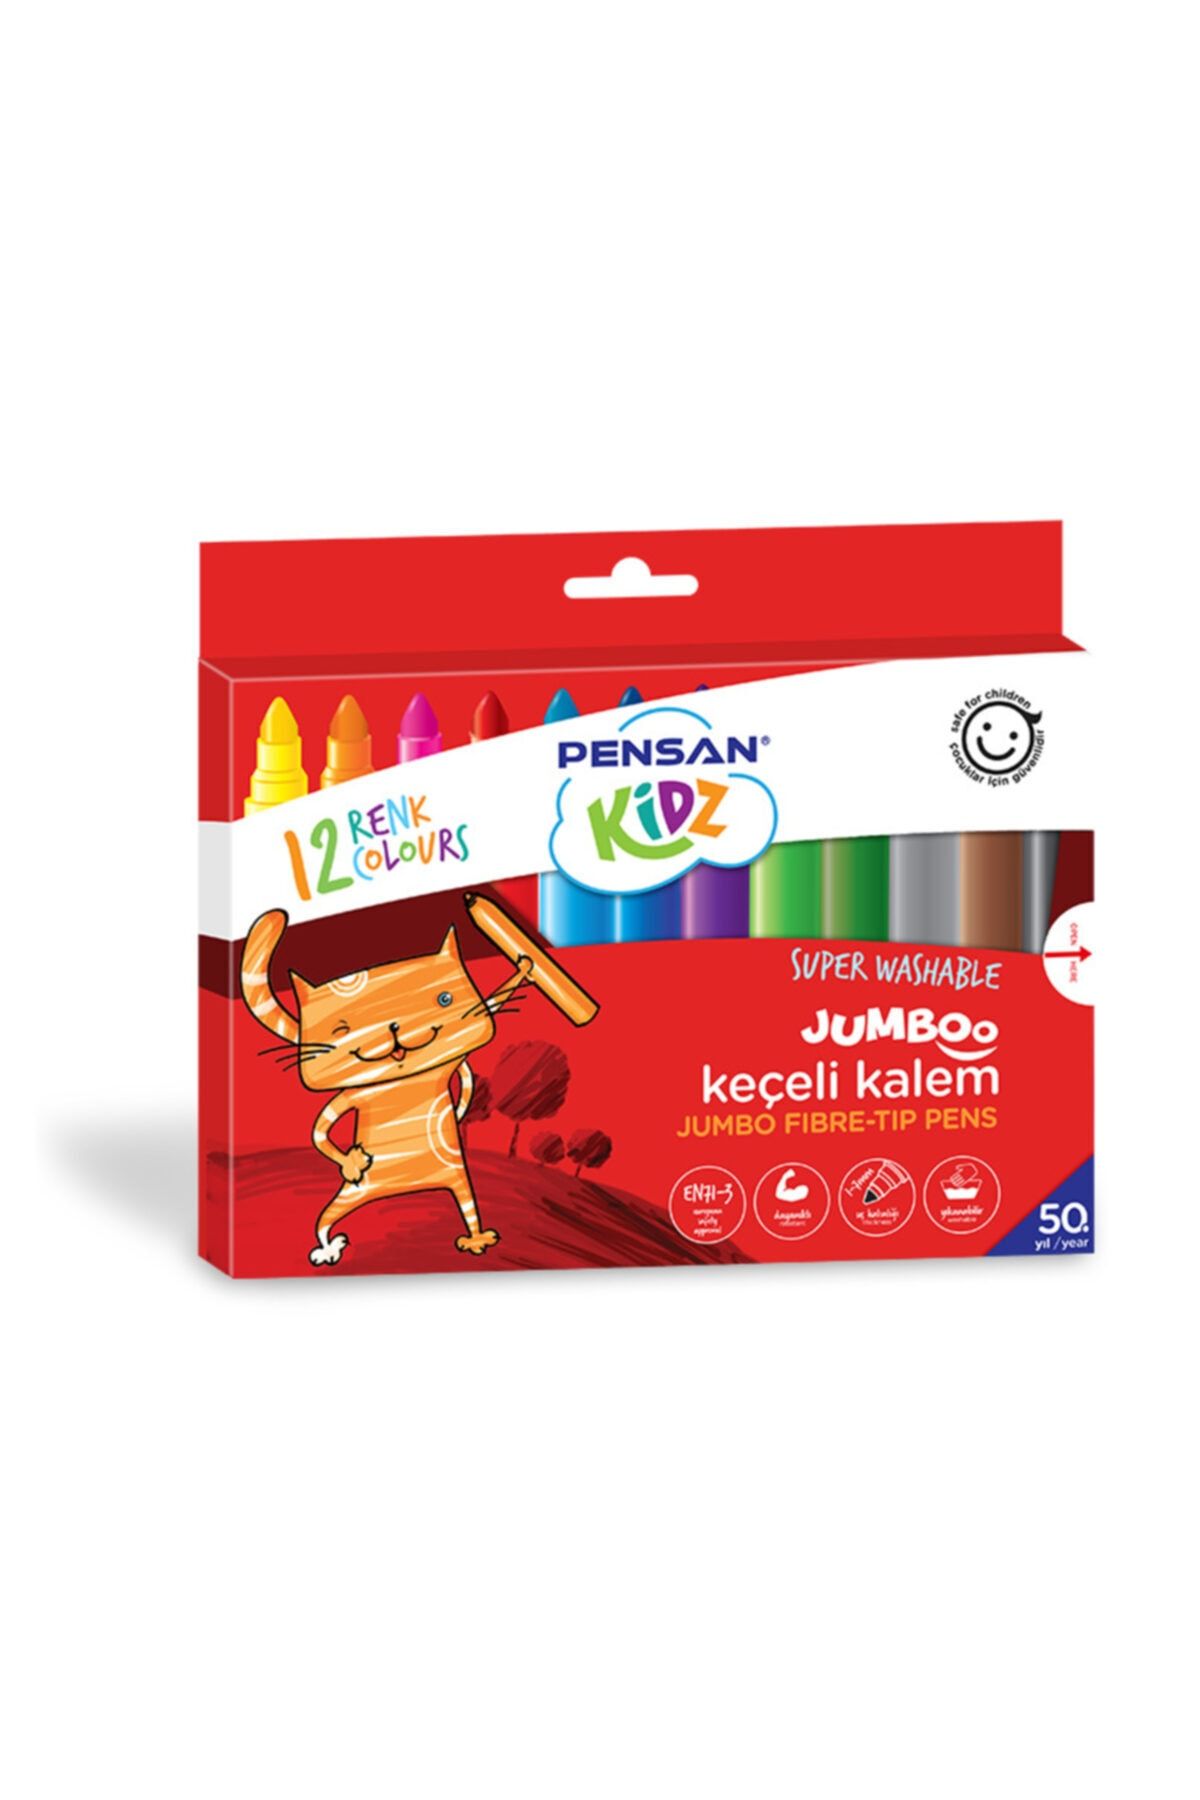 Pensan Kidz 12 Renk Yıkanabilir Jumboo Keçeli Kalem Pe99040kk12r